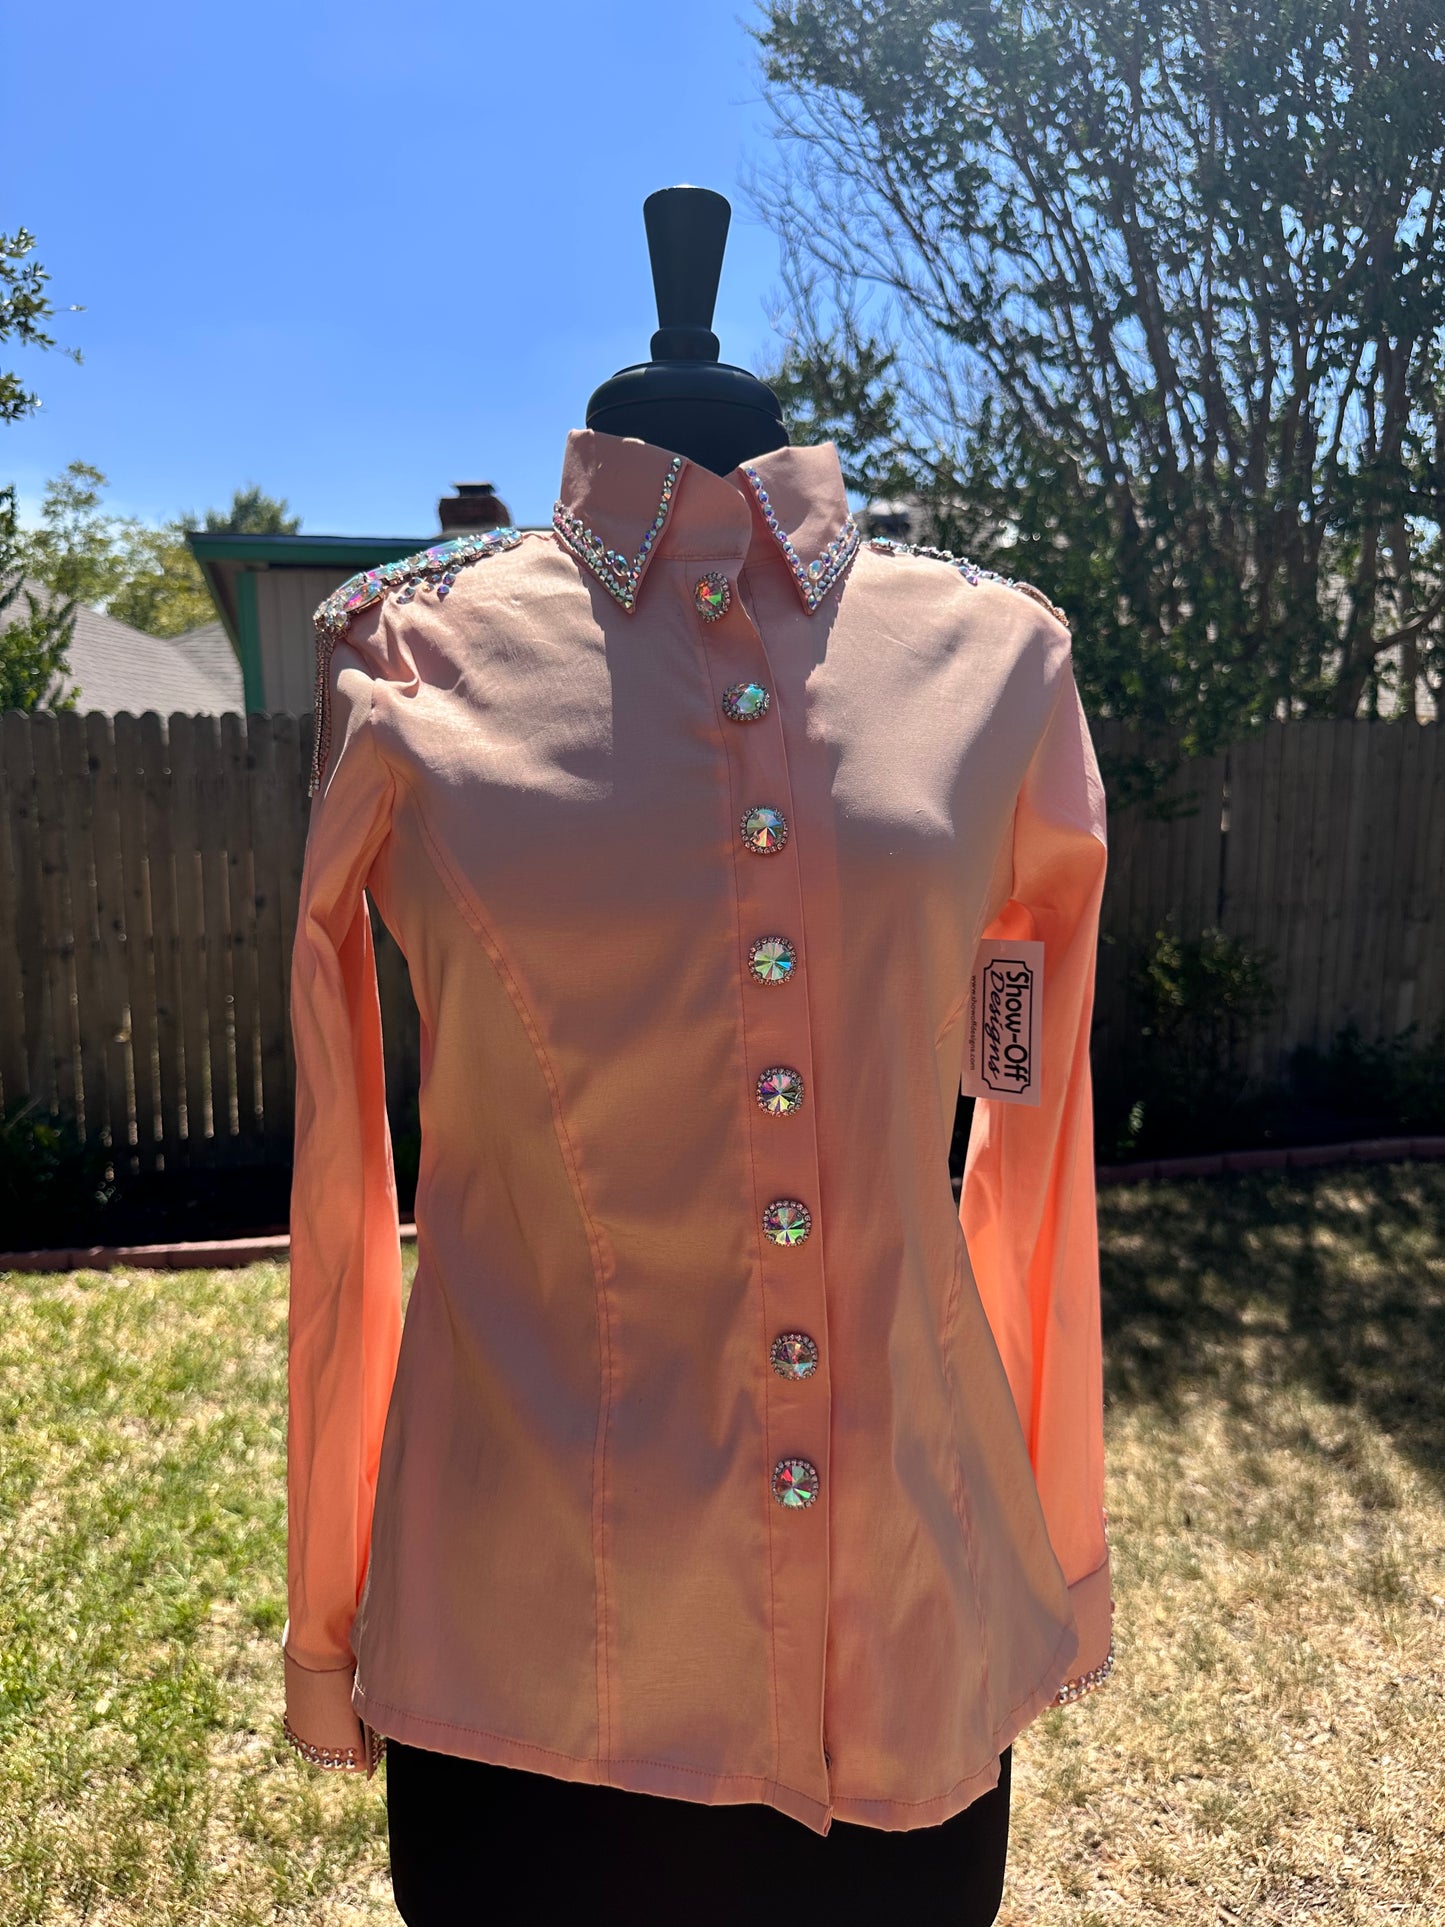 Size medium day shirt stretch taffeta hidden zipper peach